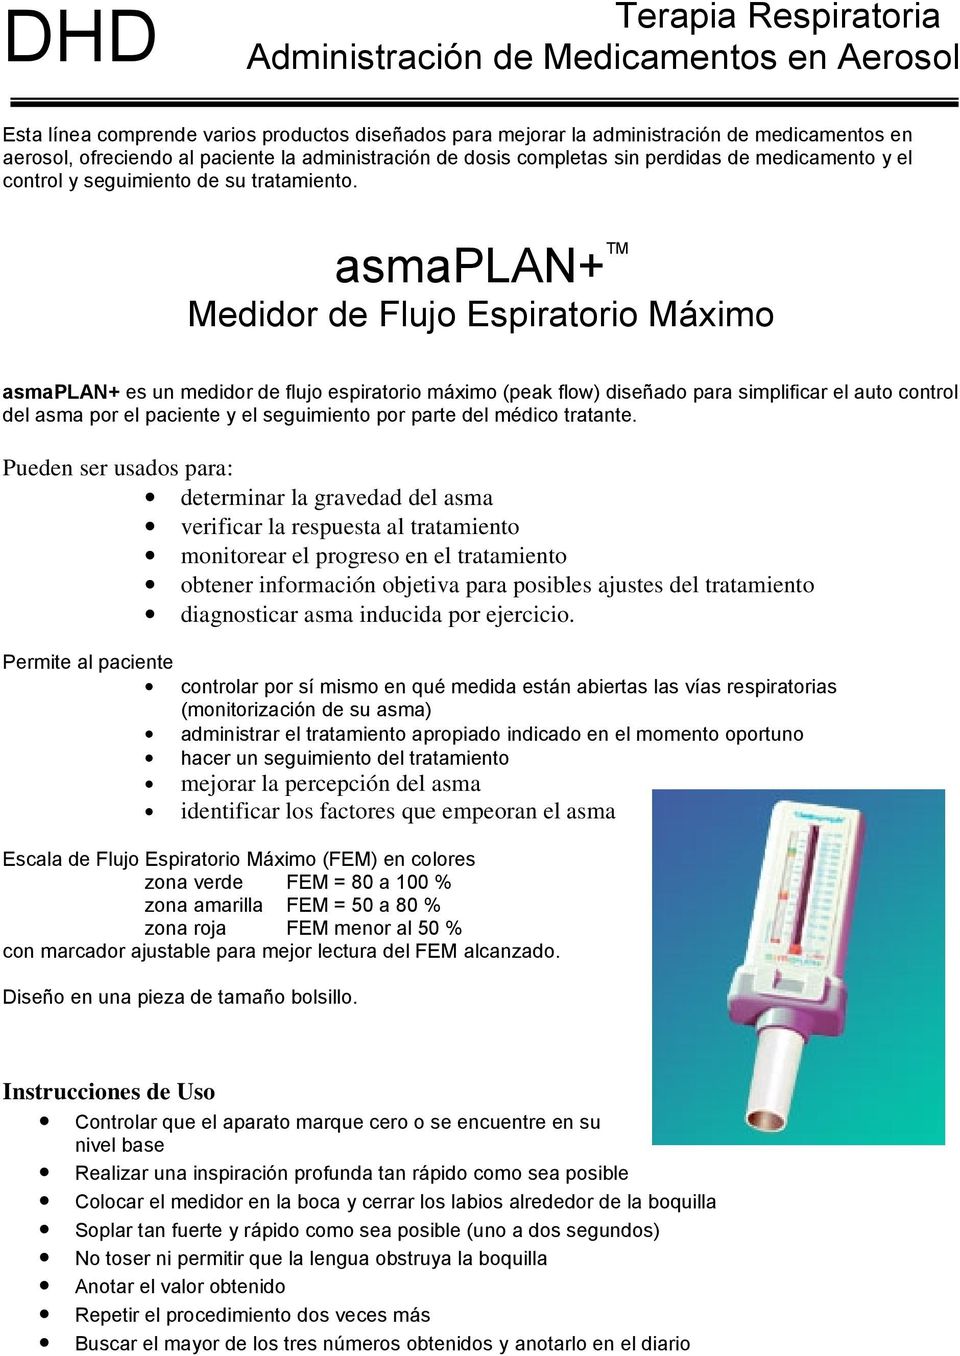 asmaplan+ TM Medidor de Flujo Espiratorio Máximo asmaplan+ es un medidor de flujo espiratorio máximo (peak flow) diseñado para simplificar el auto control del asma por el paciente y el seguimiento